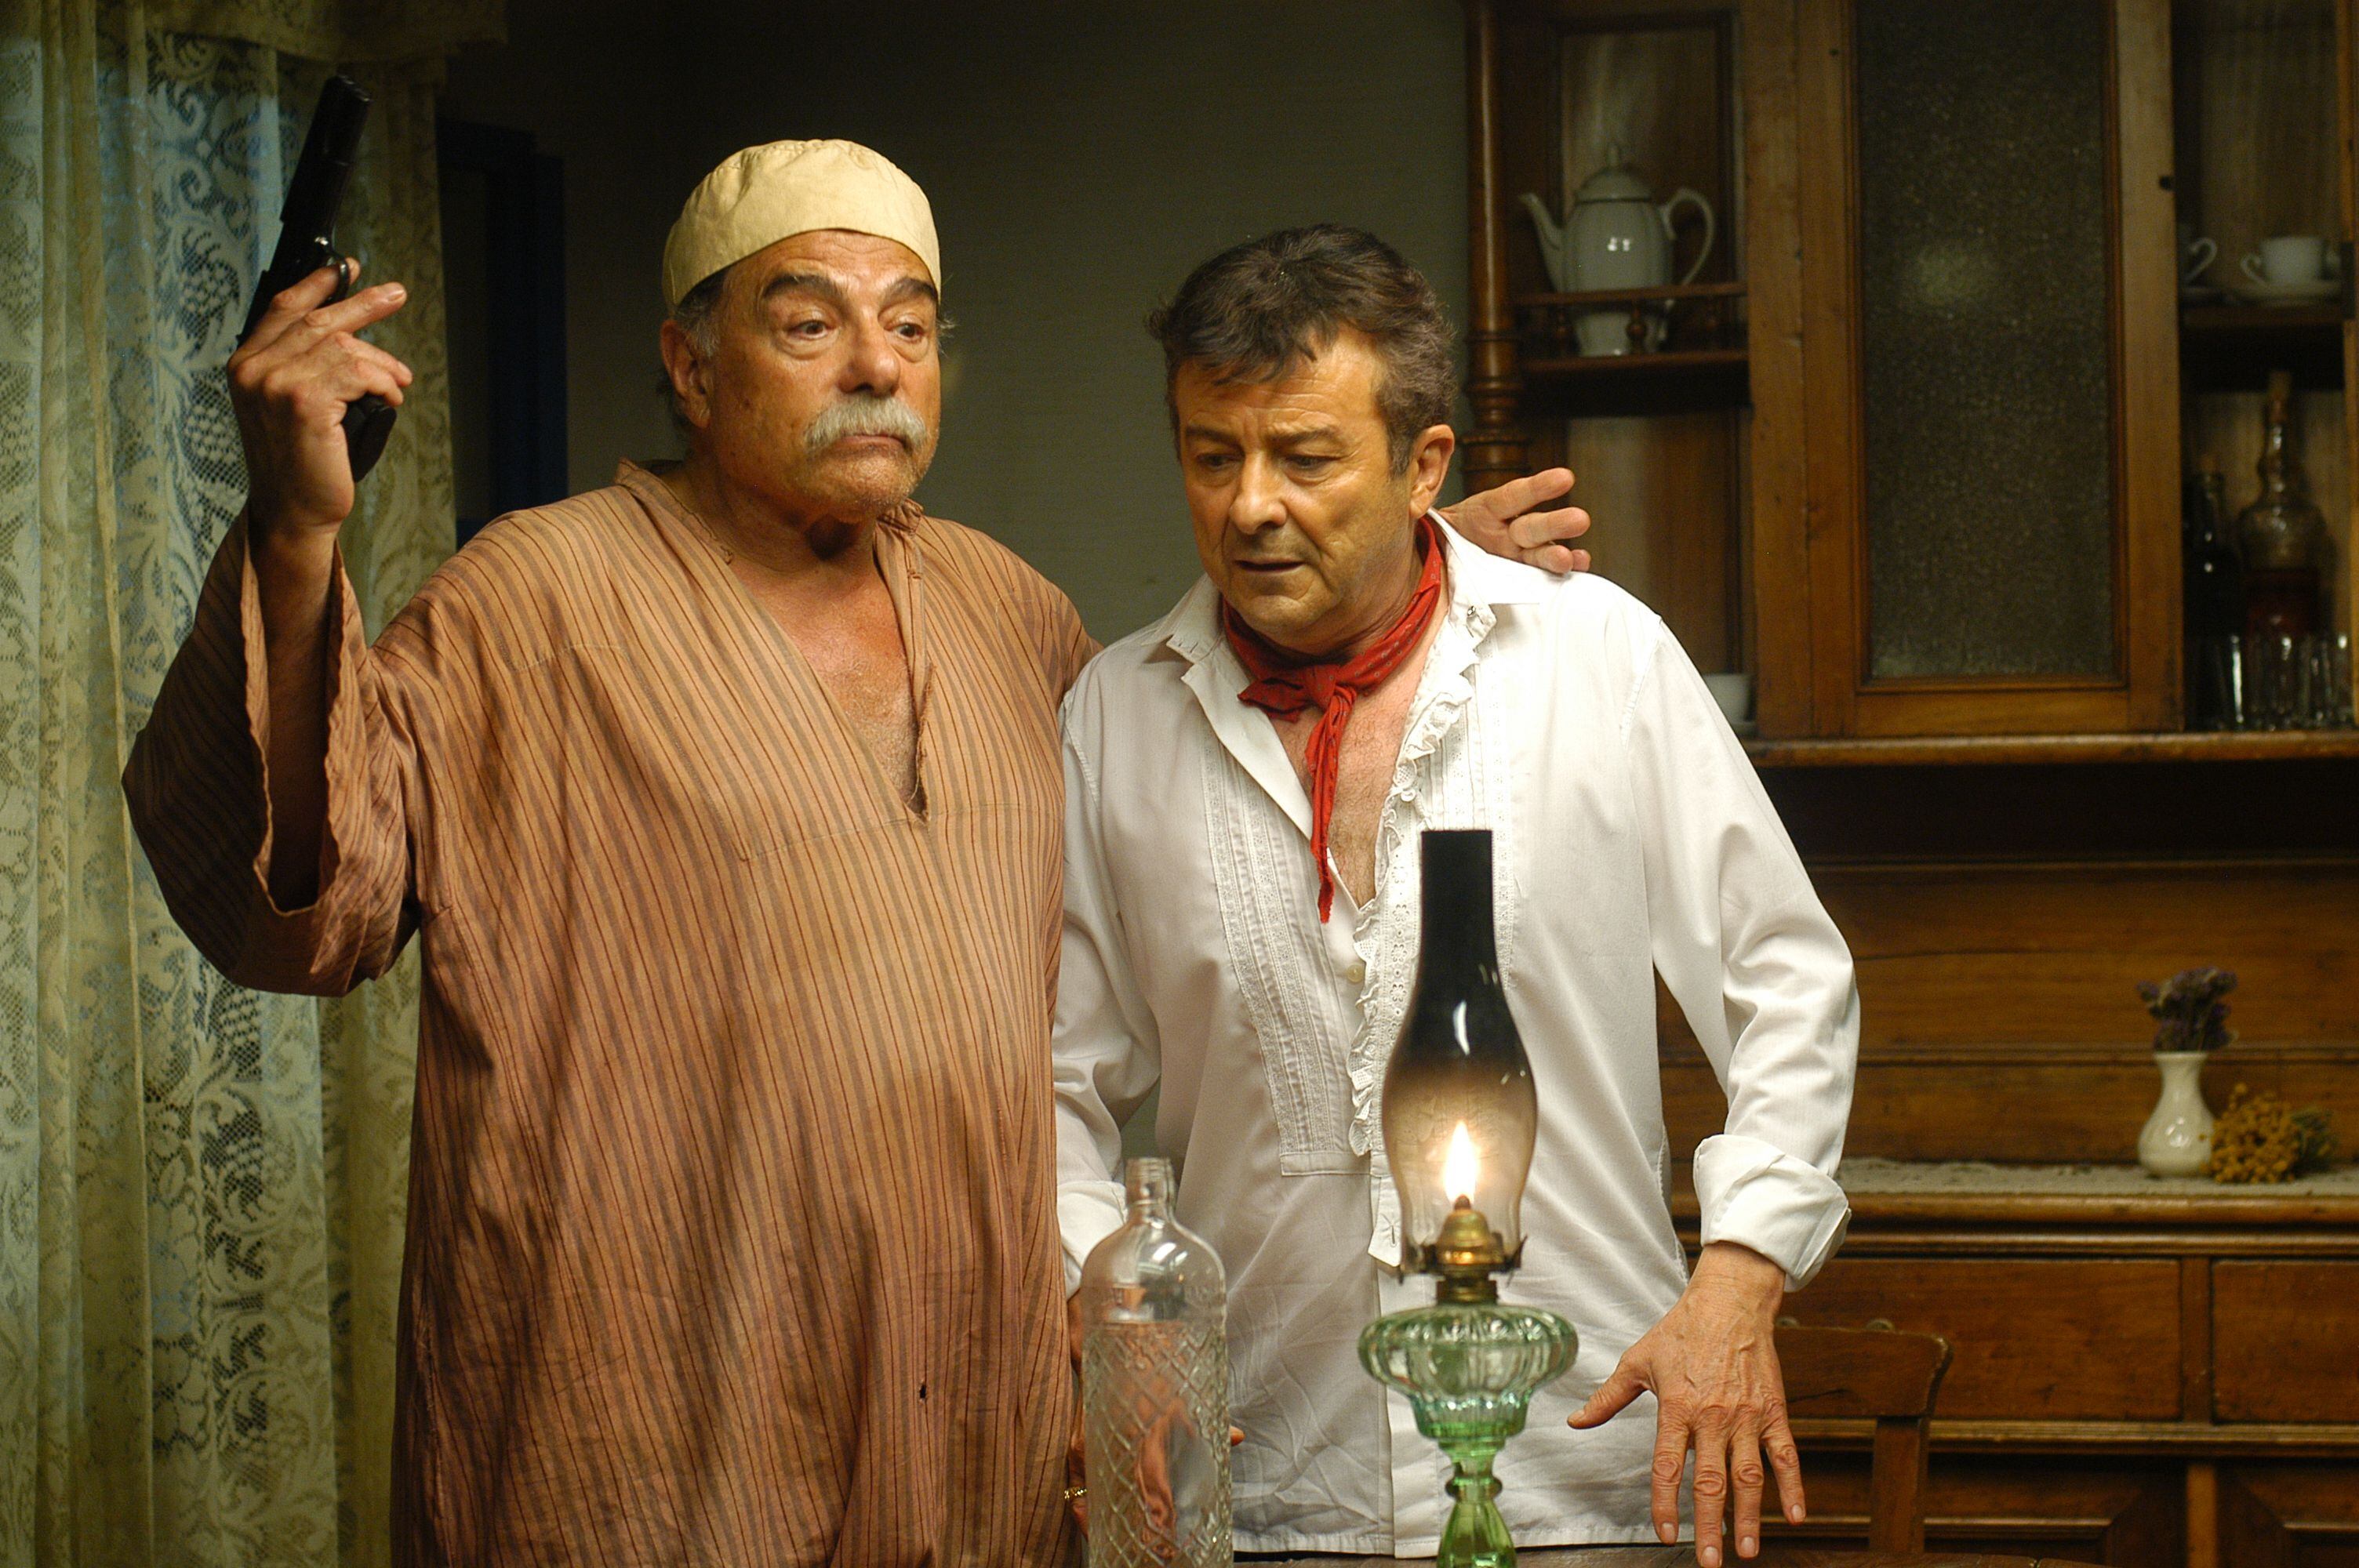 Los actores Juan Luis Galiardo (a la izquierda) y Juan Diego, en un fotograma de la serie de películas 'Los cuernos de Don Friolera', en 2008.